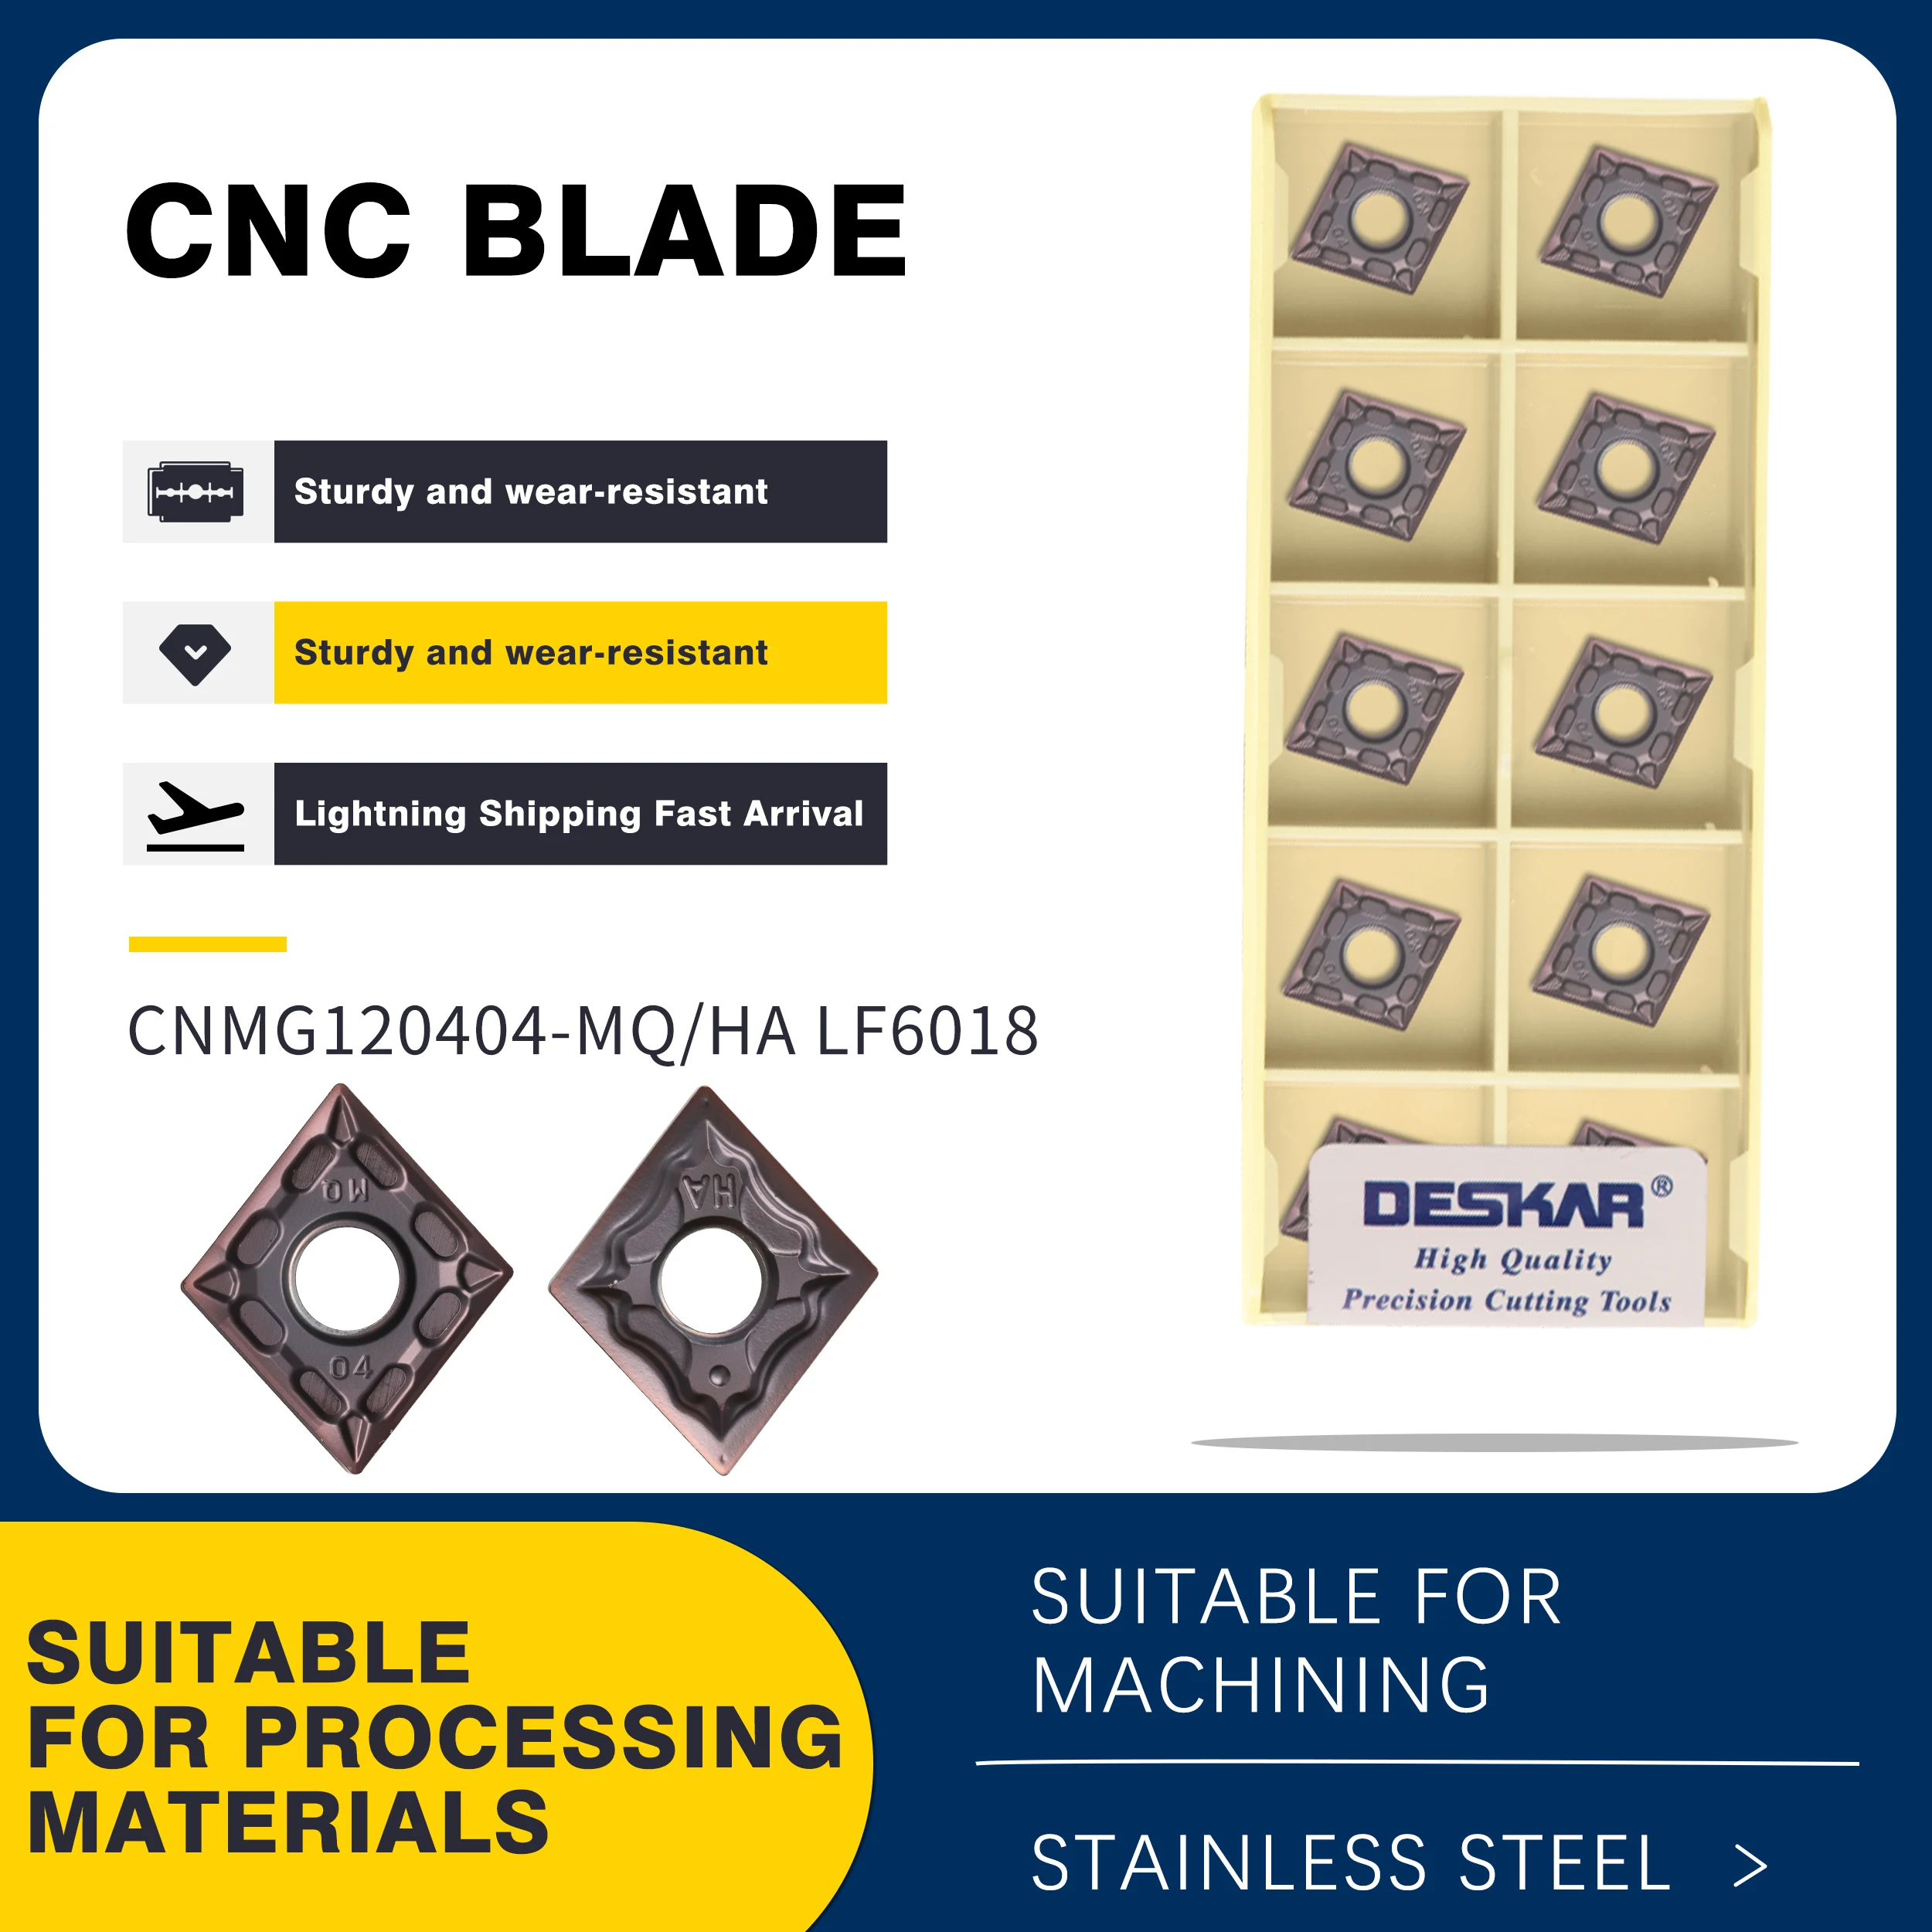 

Высококачественные карбидные пластины CNMG120404 CNMG120408 MA HS MQ MS LF6018, токарный станок с ЧПУ, токарные резцы, режущие лезвия, инструмент из нержавеющей стали